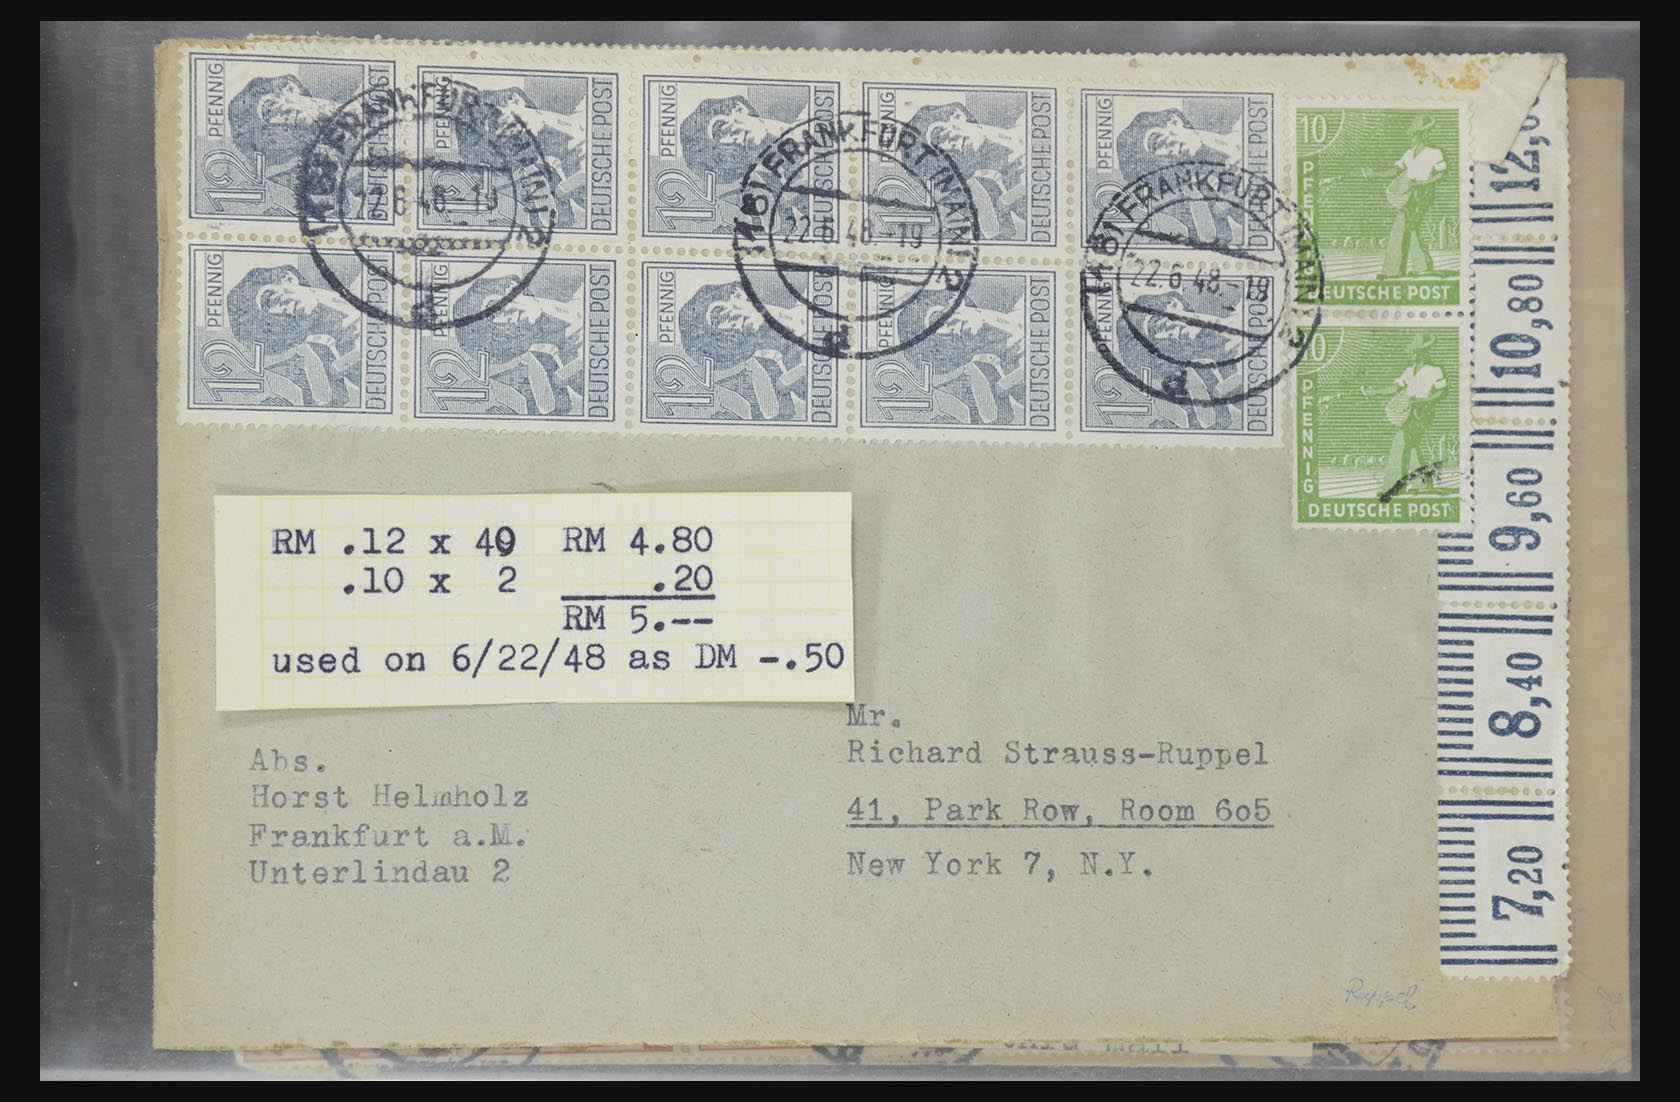 31581 020 - 31581 Duitsland brieven en FDC's 1945-1981.